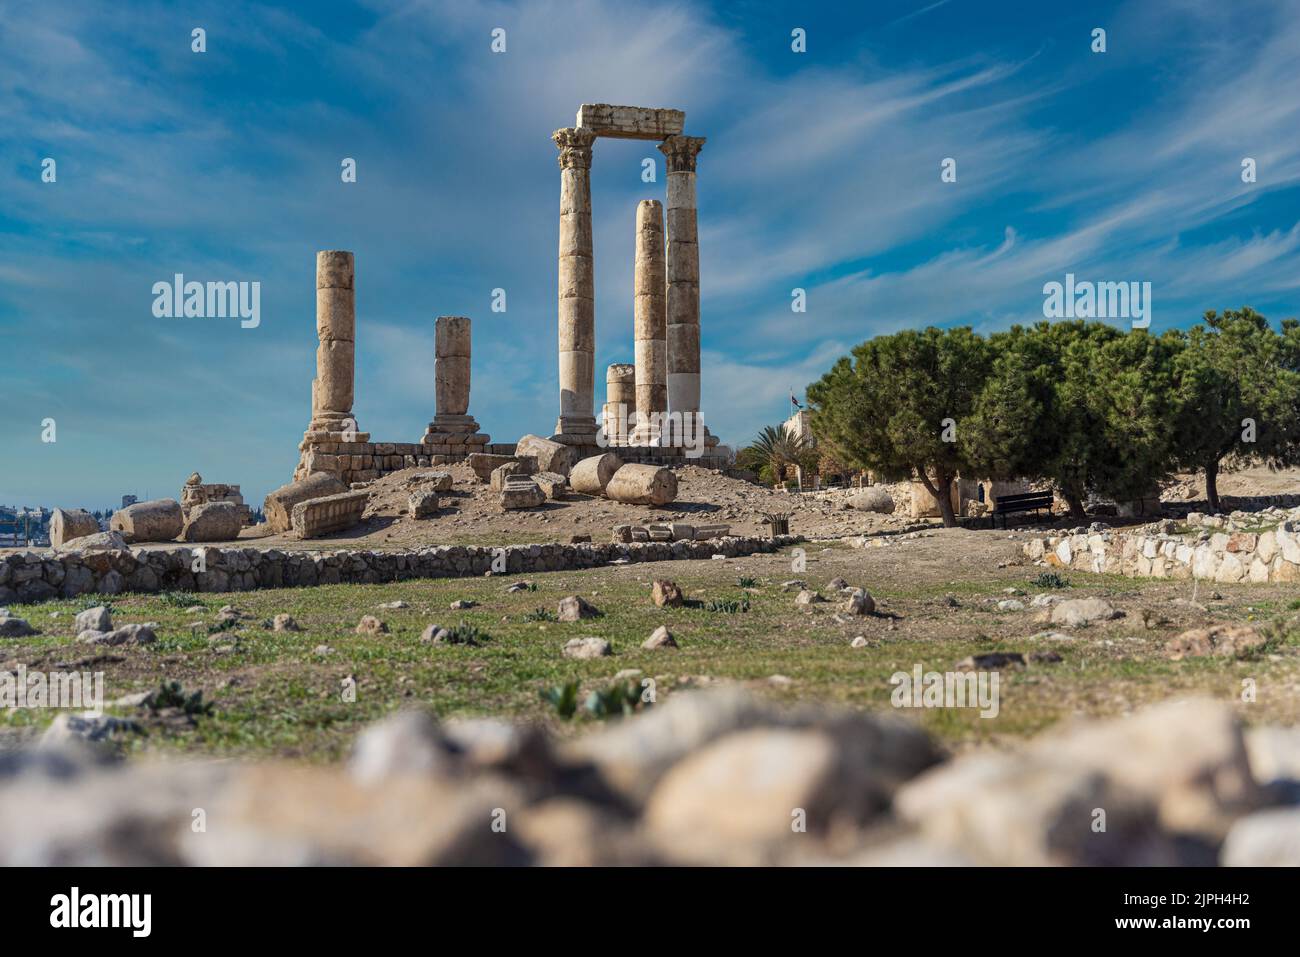 jordan, temple ruins, hercules temple, jordans, temple ruin Stock Photo